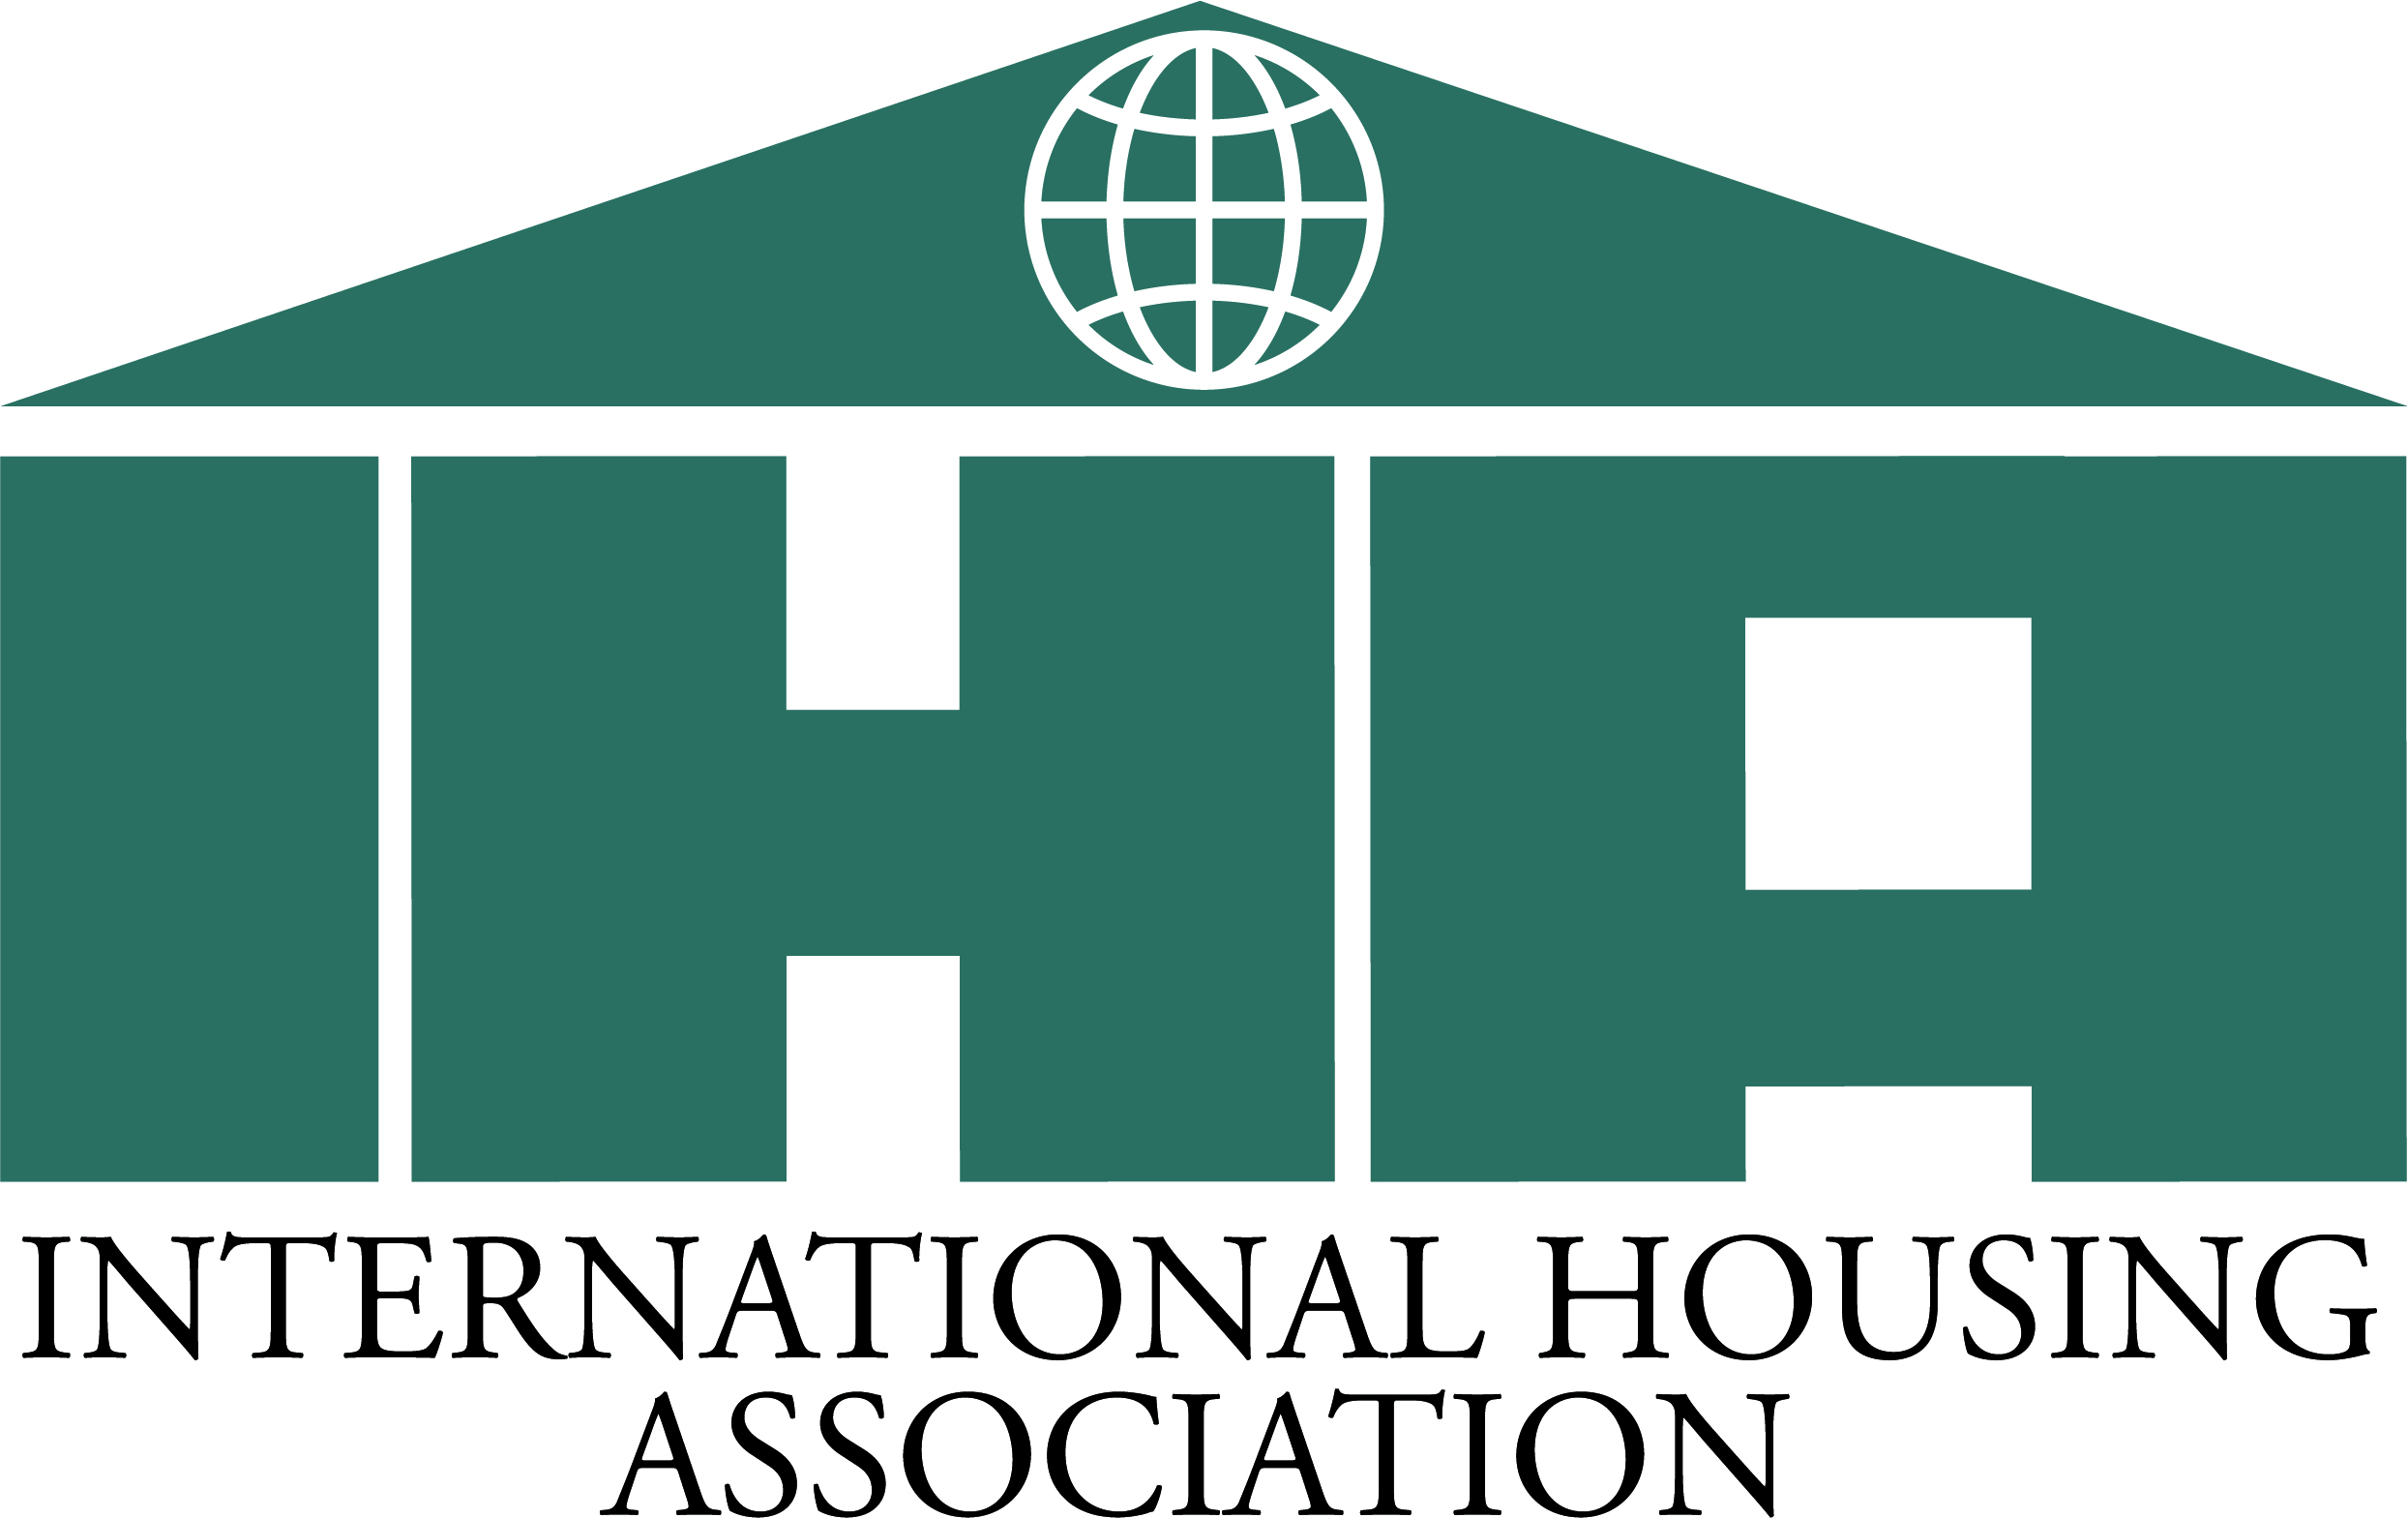 International Housing Association